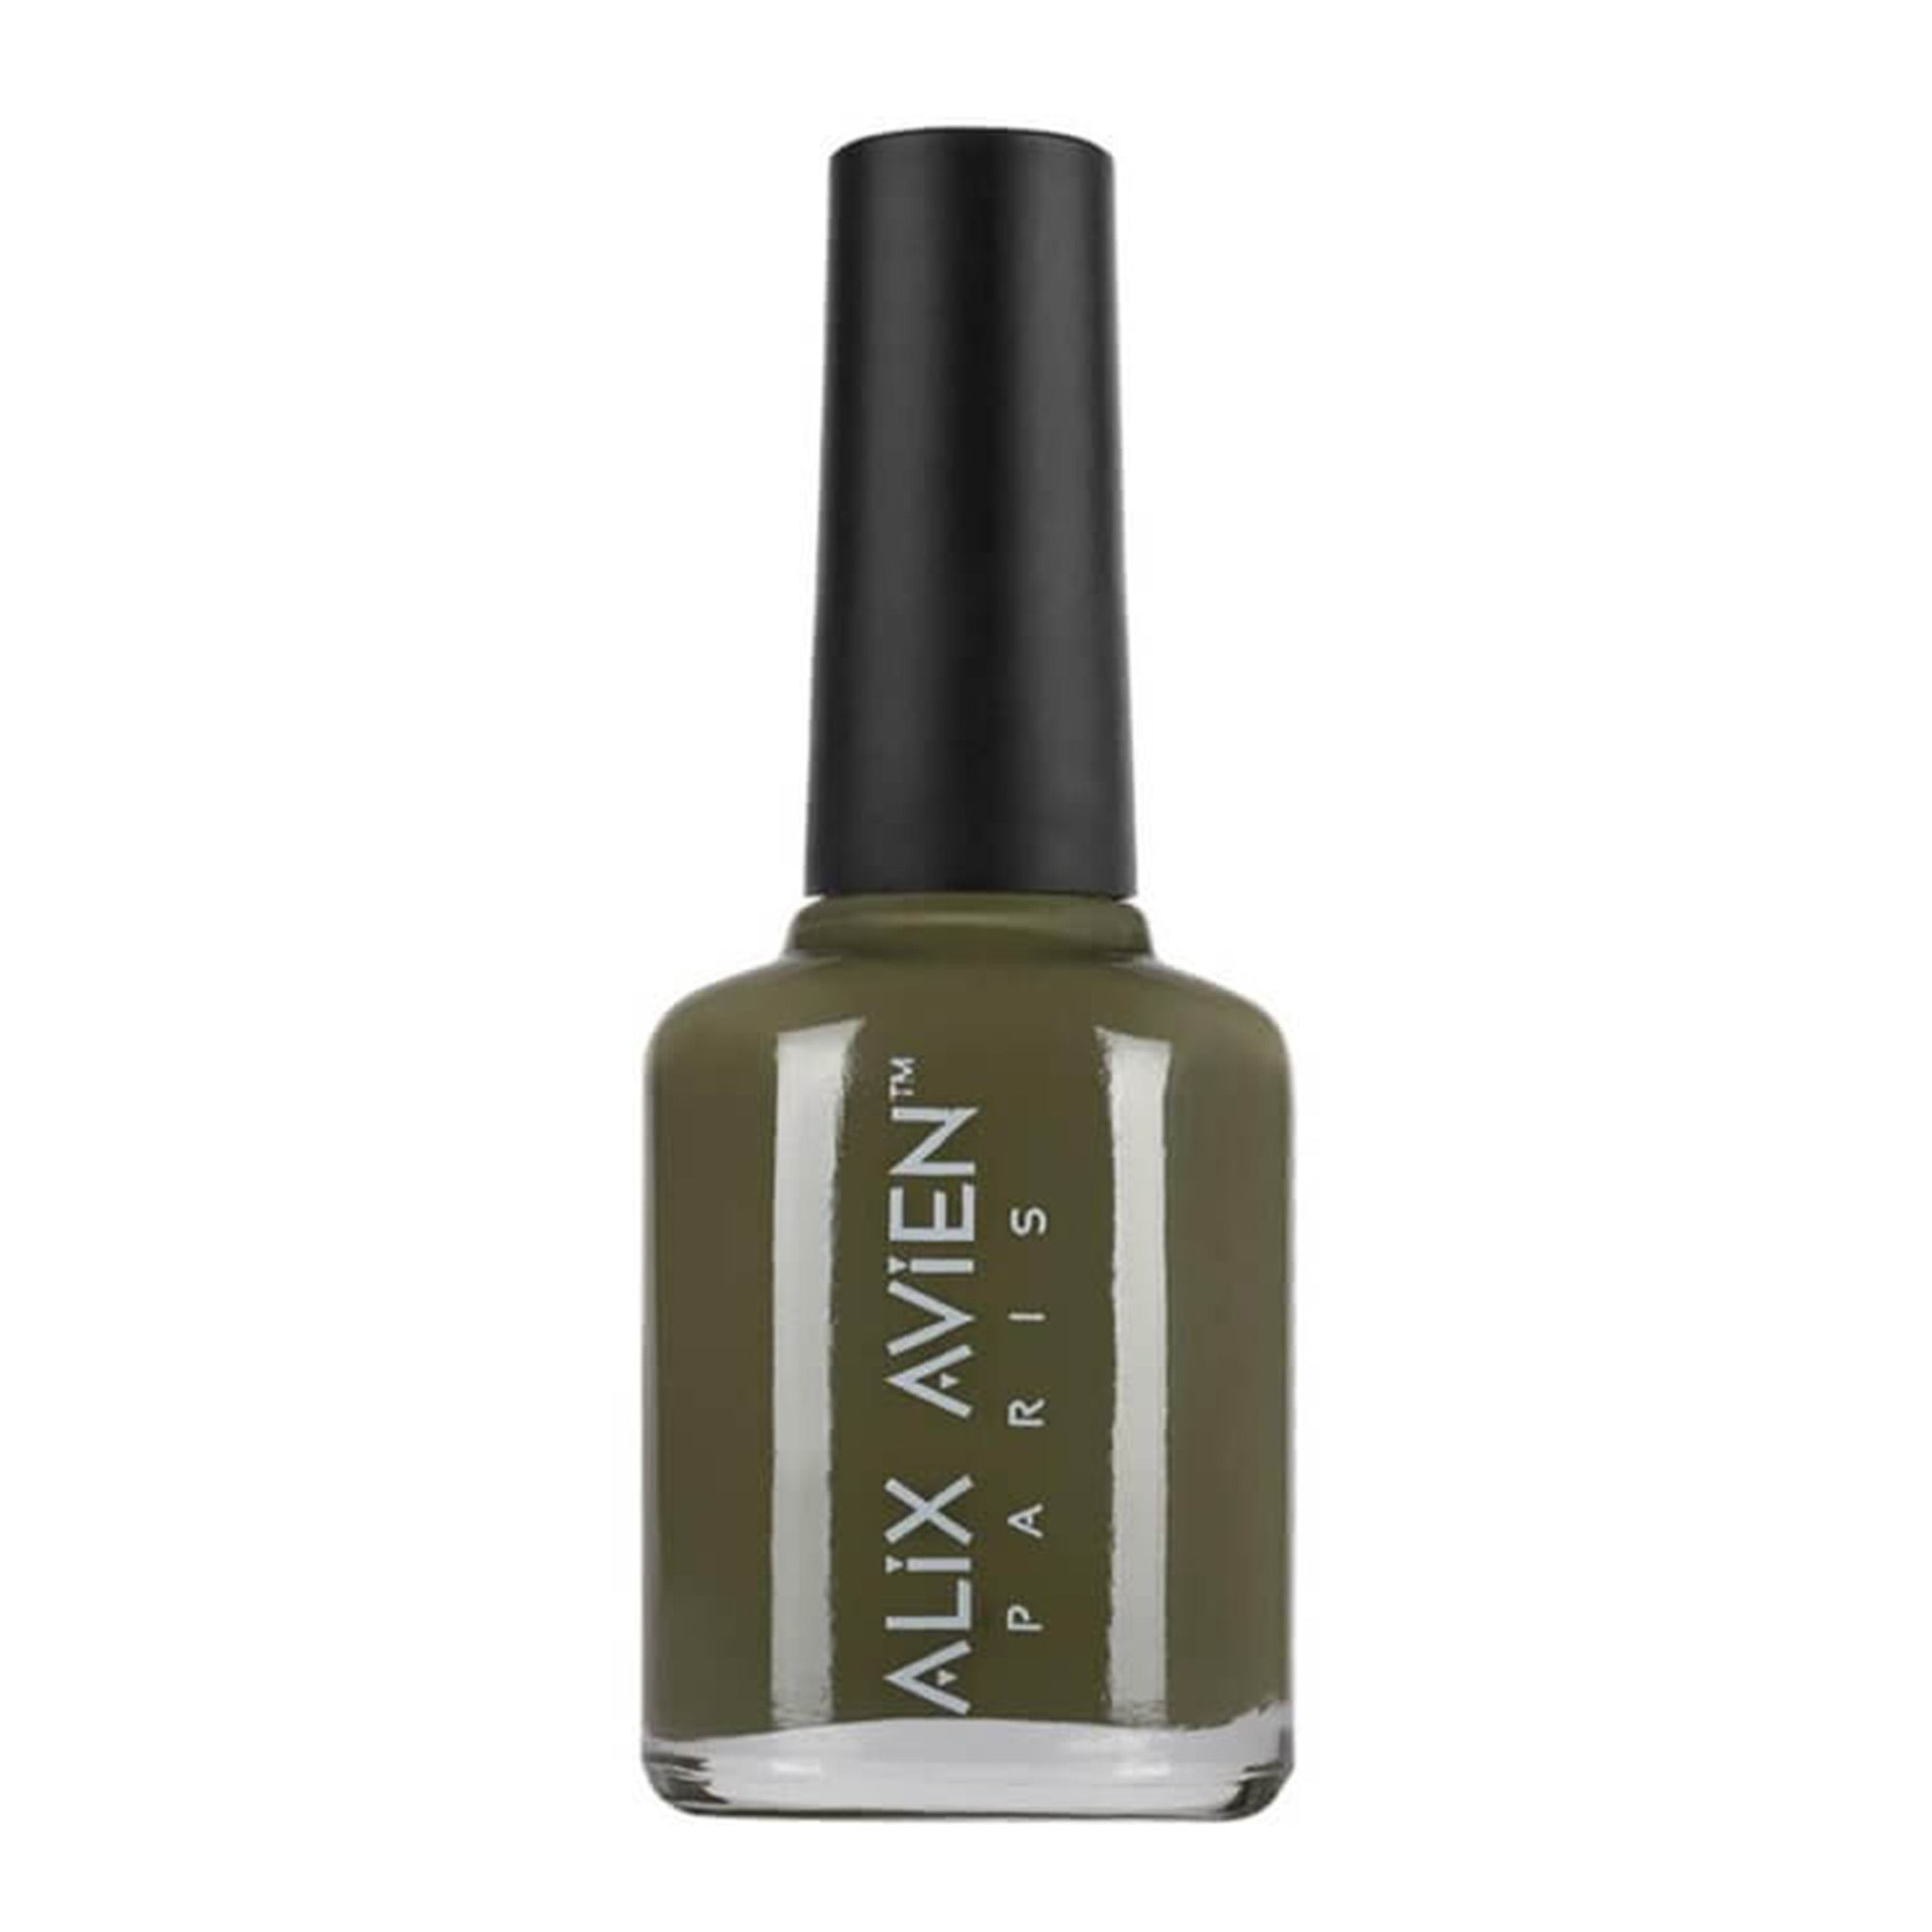 Alix Avien - Nail Polish No.44 (Army Green)